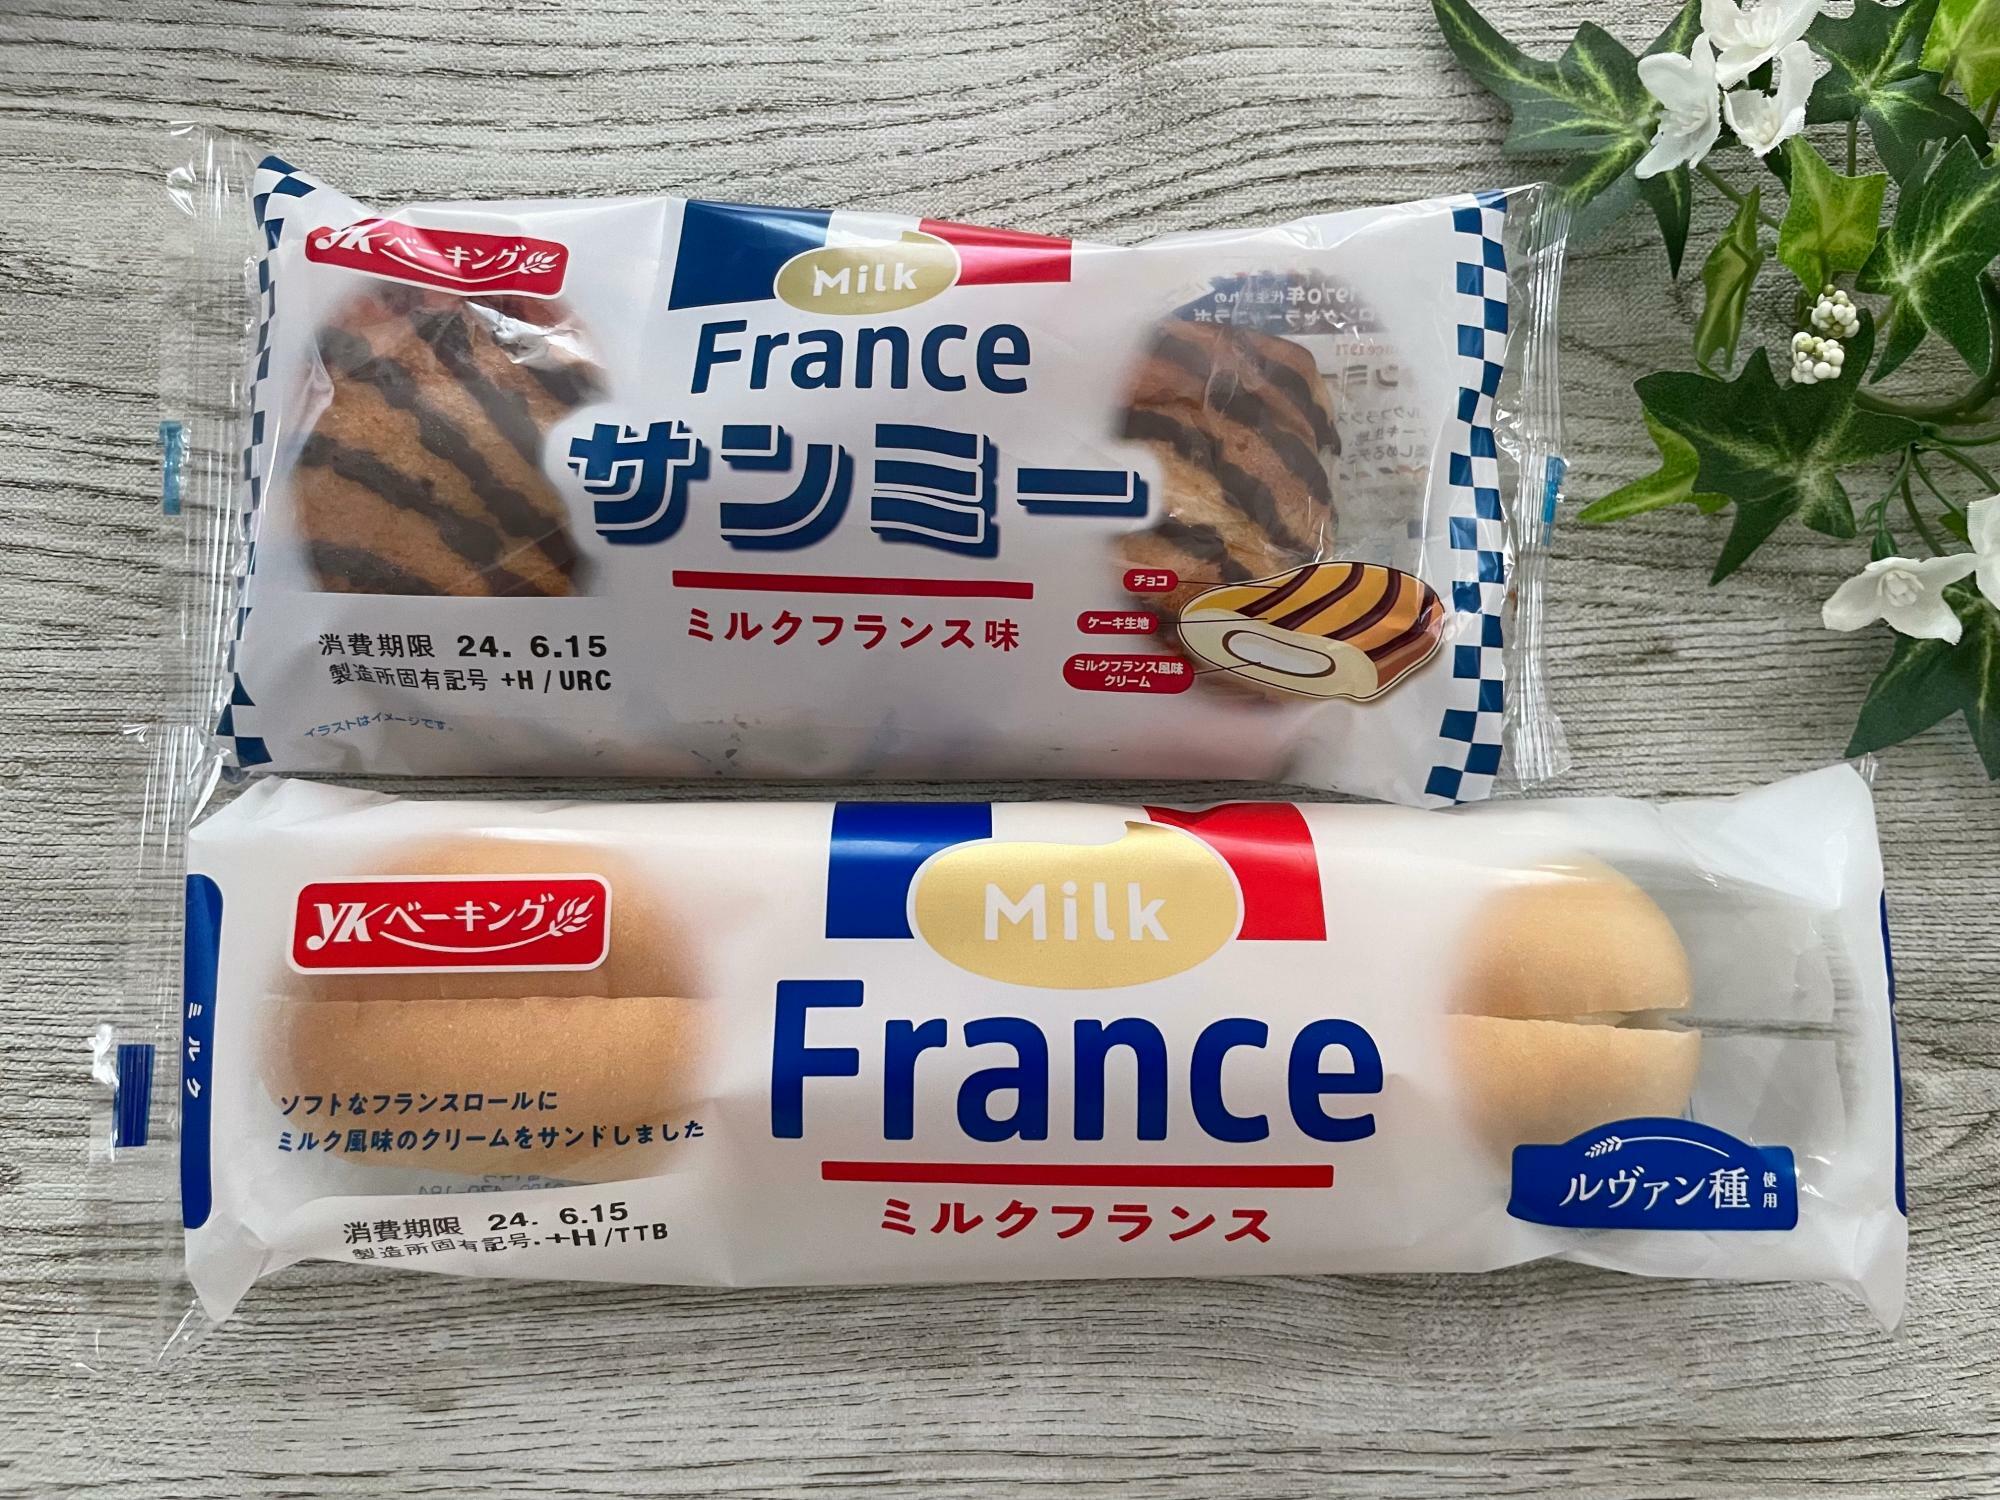 サンミー ミルクフランス味とミルクフランス